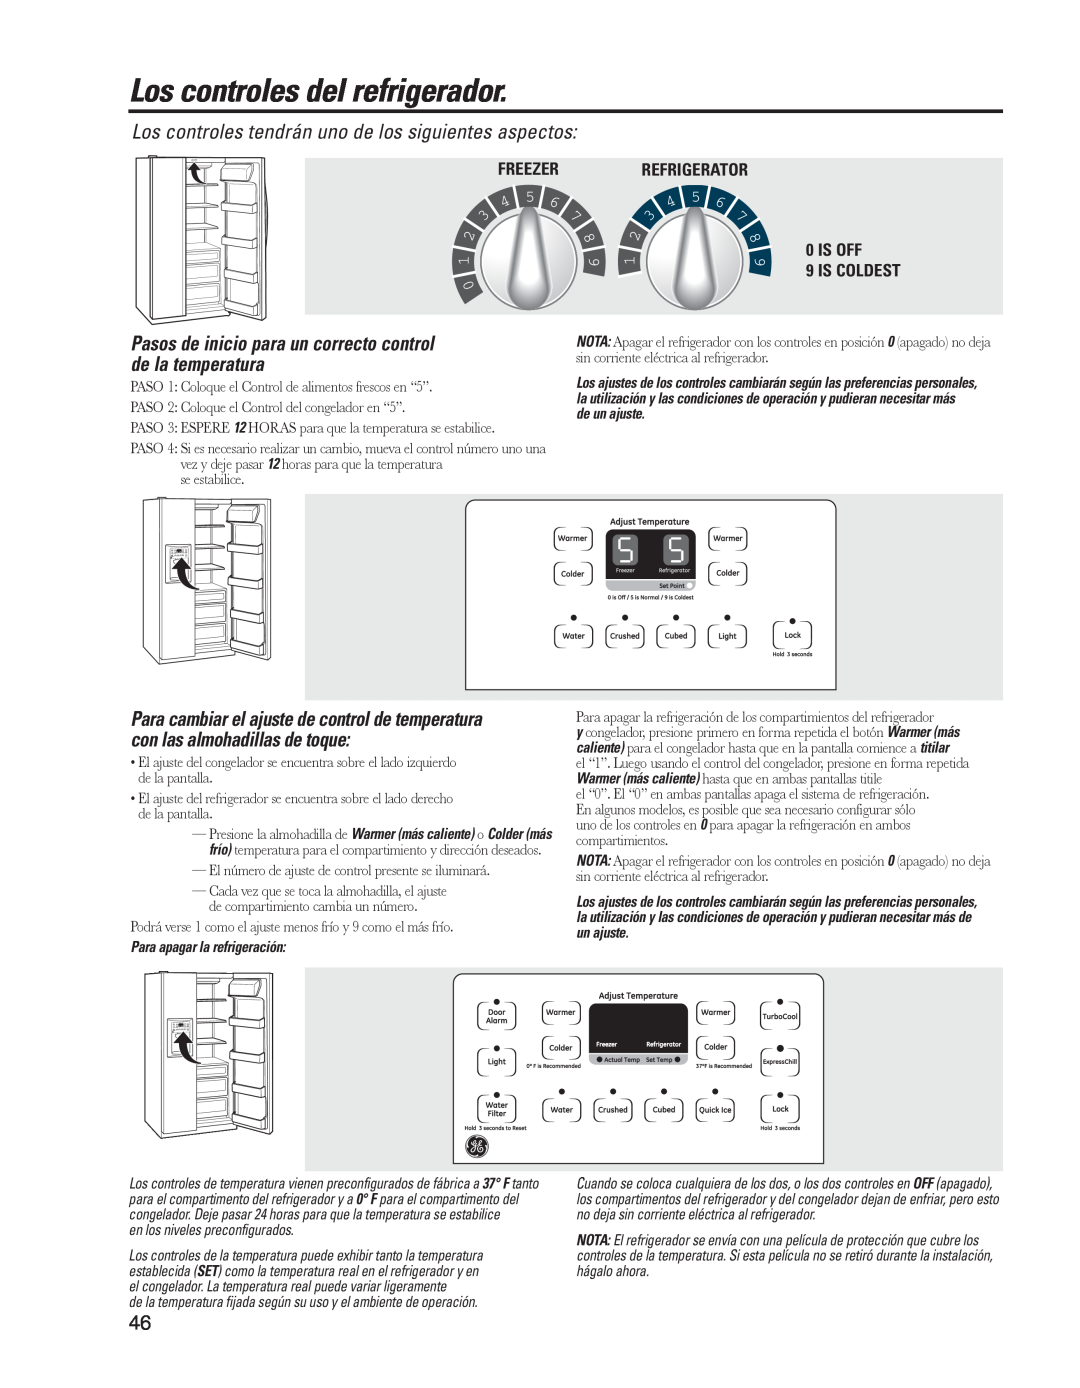 GE GARF19XXYK, ED5KVEXVQ manual Los controles del refrigerador, 09ISISOFFCOLDEST, Para apagar la refrigeración 